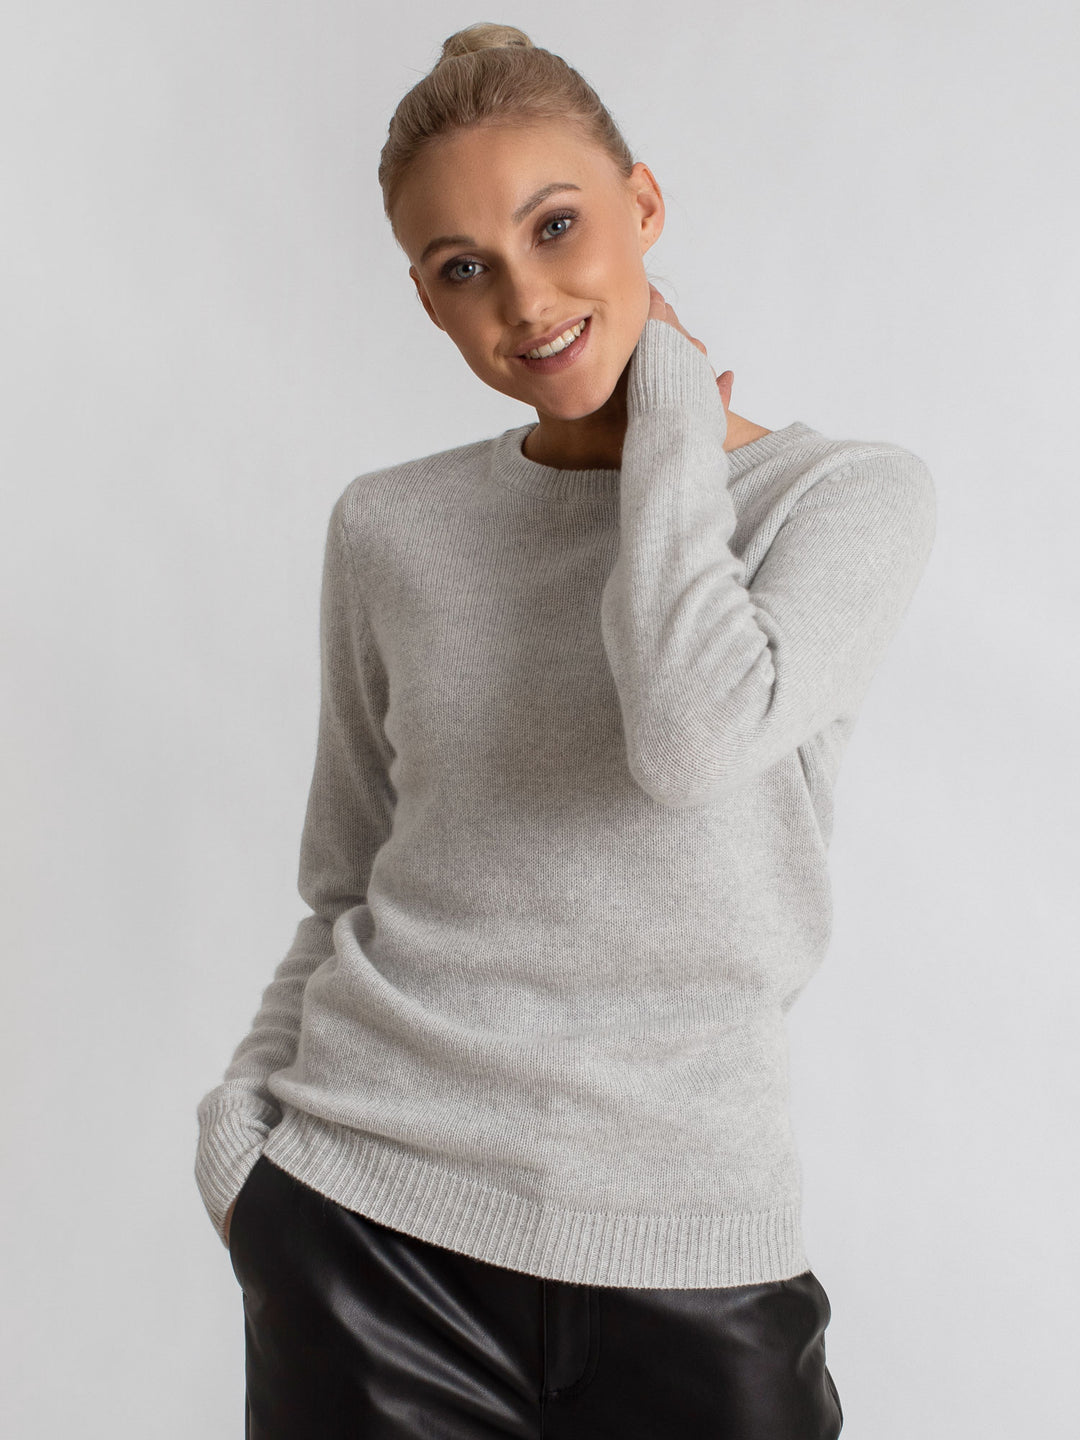 cashmere sweater light grey luxury kashmina norwegian design sustainable fashion